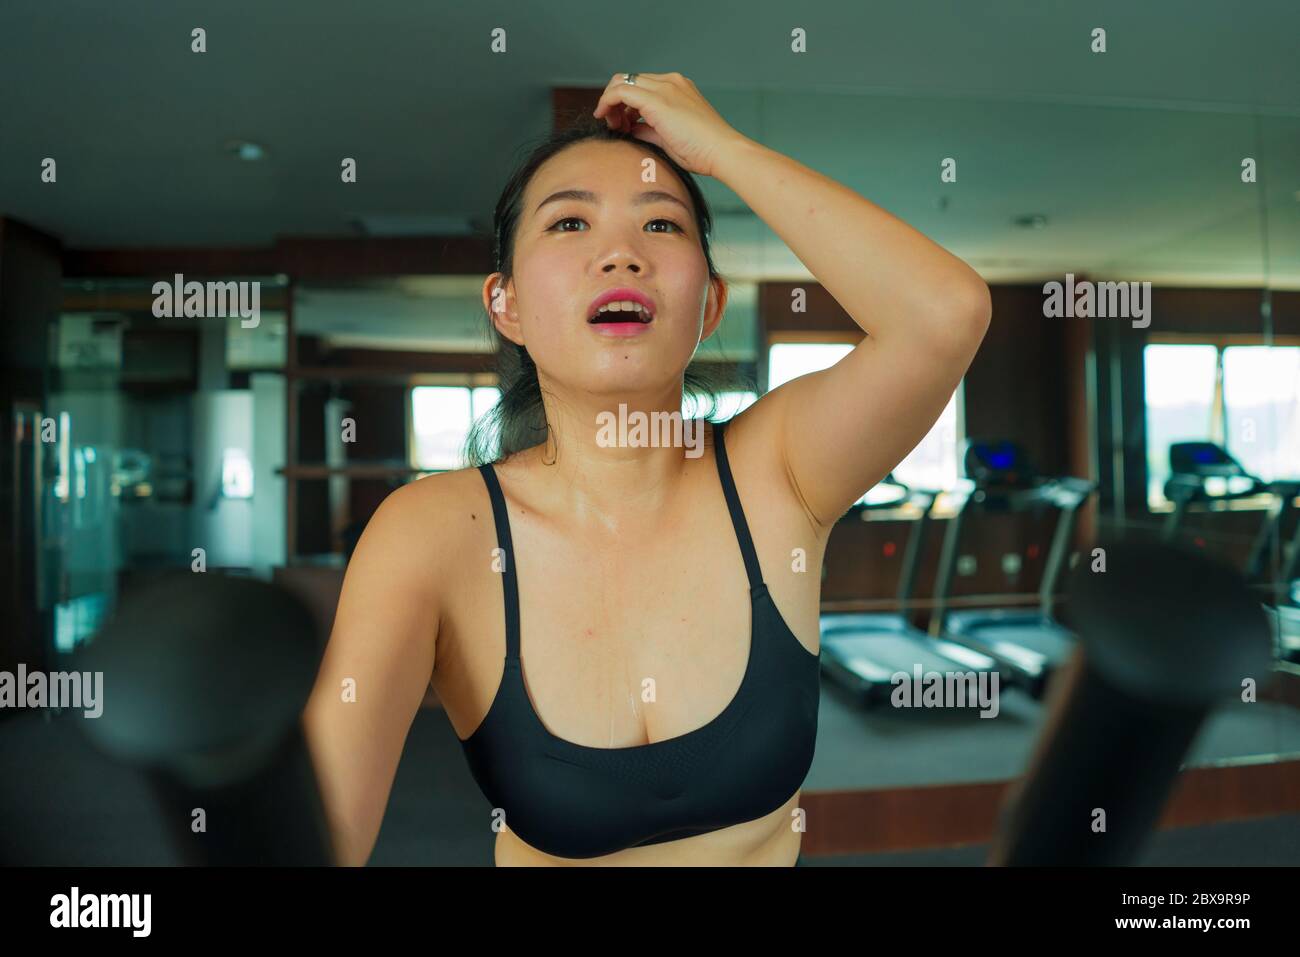 Portrait de séance de jeune femme asiatique belle et heureuse entraînement de femme coréenne à l'hôtel gym ou club de fitness travaillant dur dans cardio machine elliptique à sp Banque D'Images